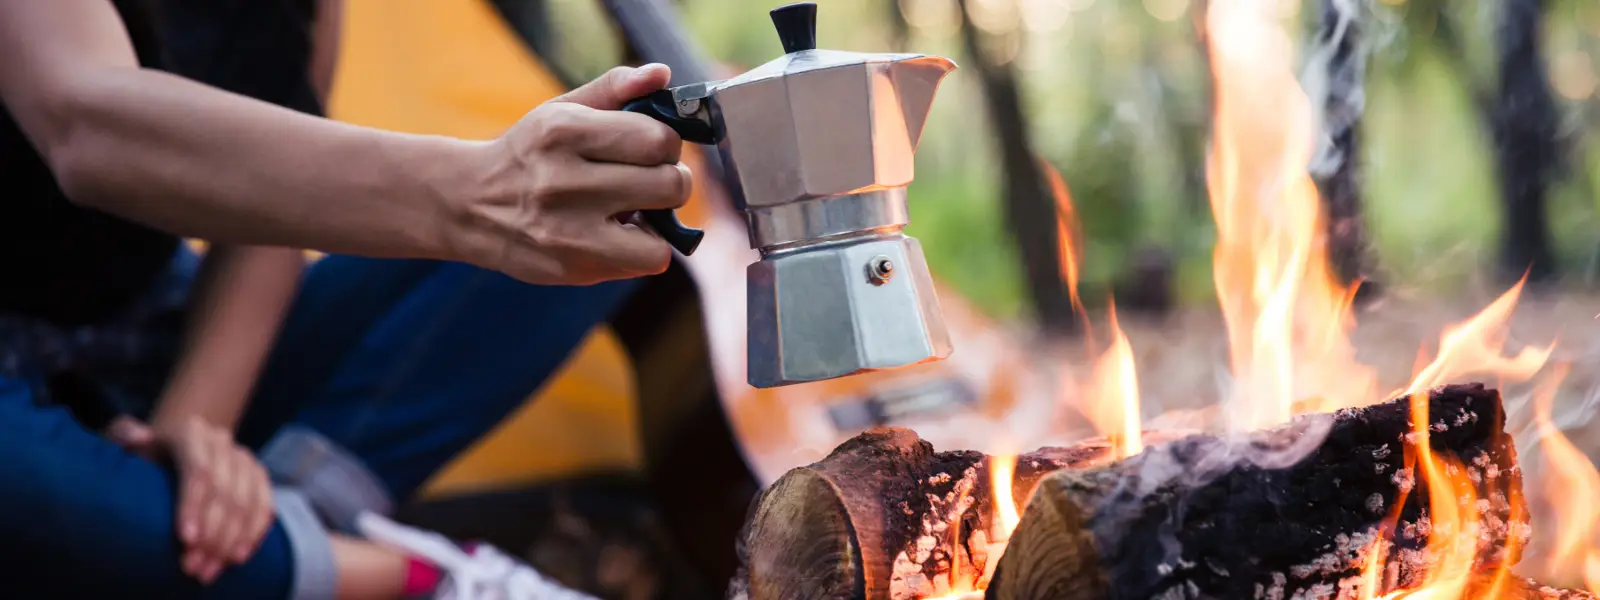 Kvinna som värmer kaffe över öppen eld i skogen